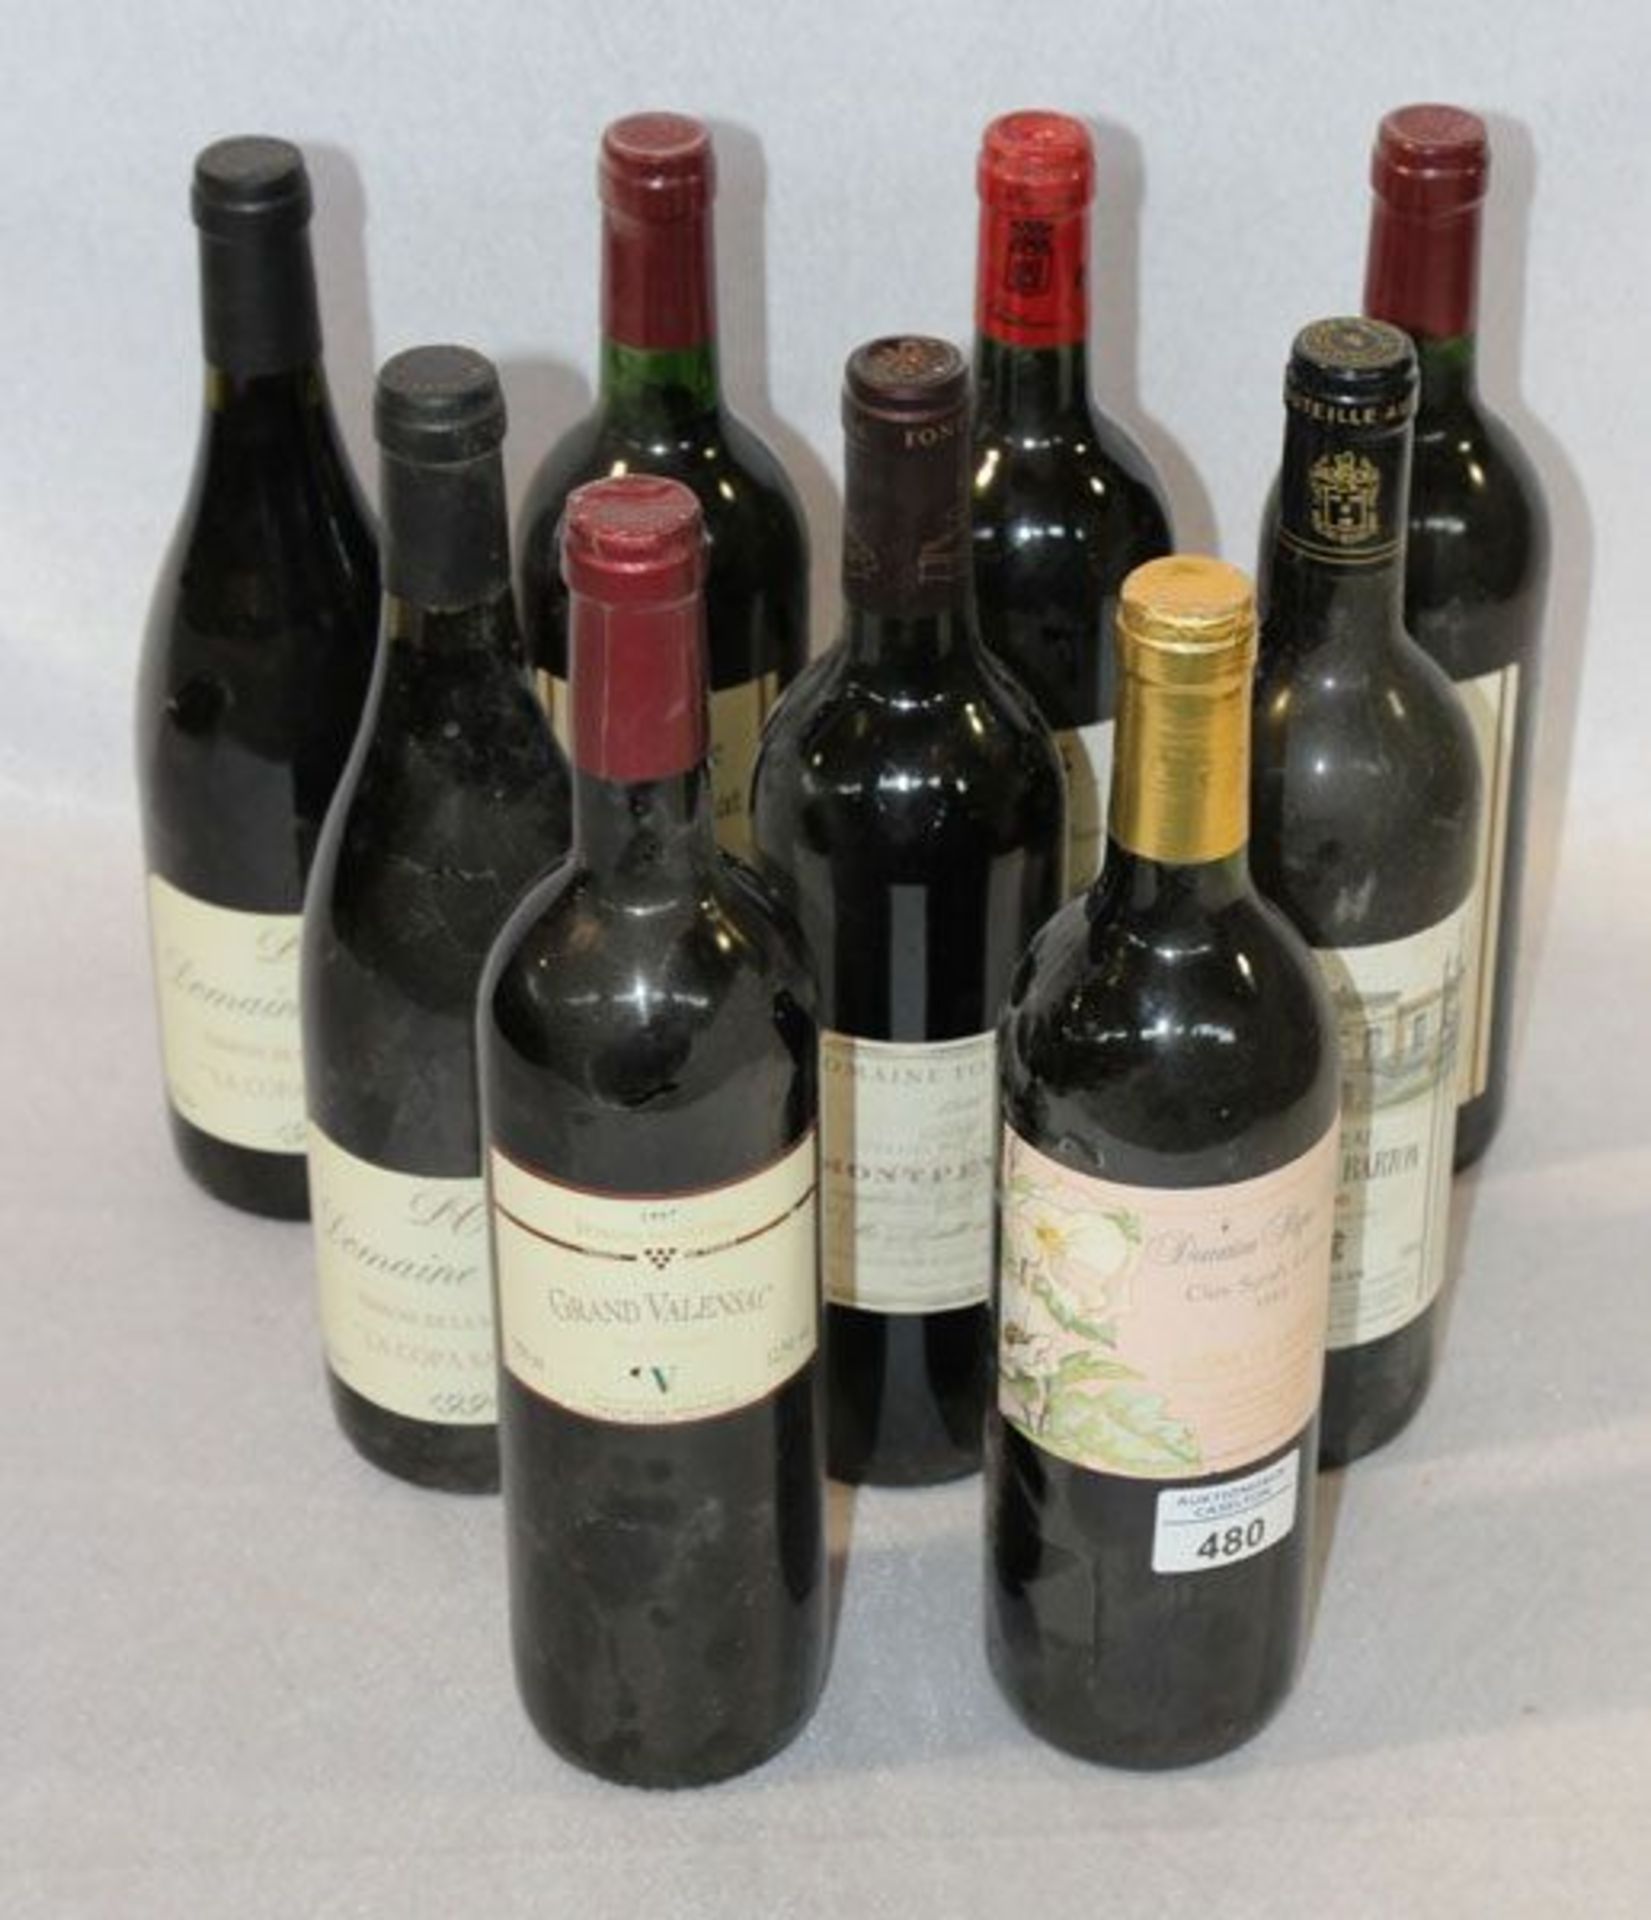 Konvolut von 9 französischen Rotweinen, diverse Jahrgänge und Winzer    Mindestpreis: 50 EUR